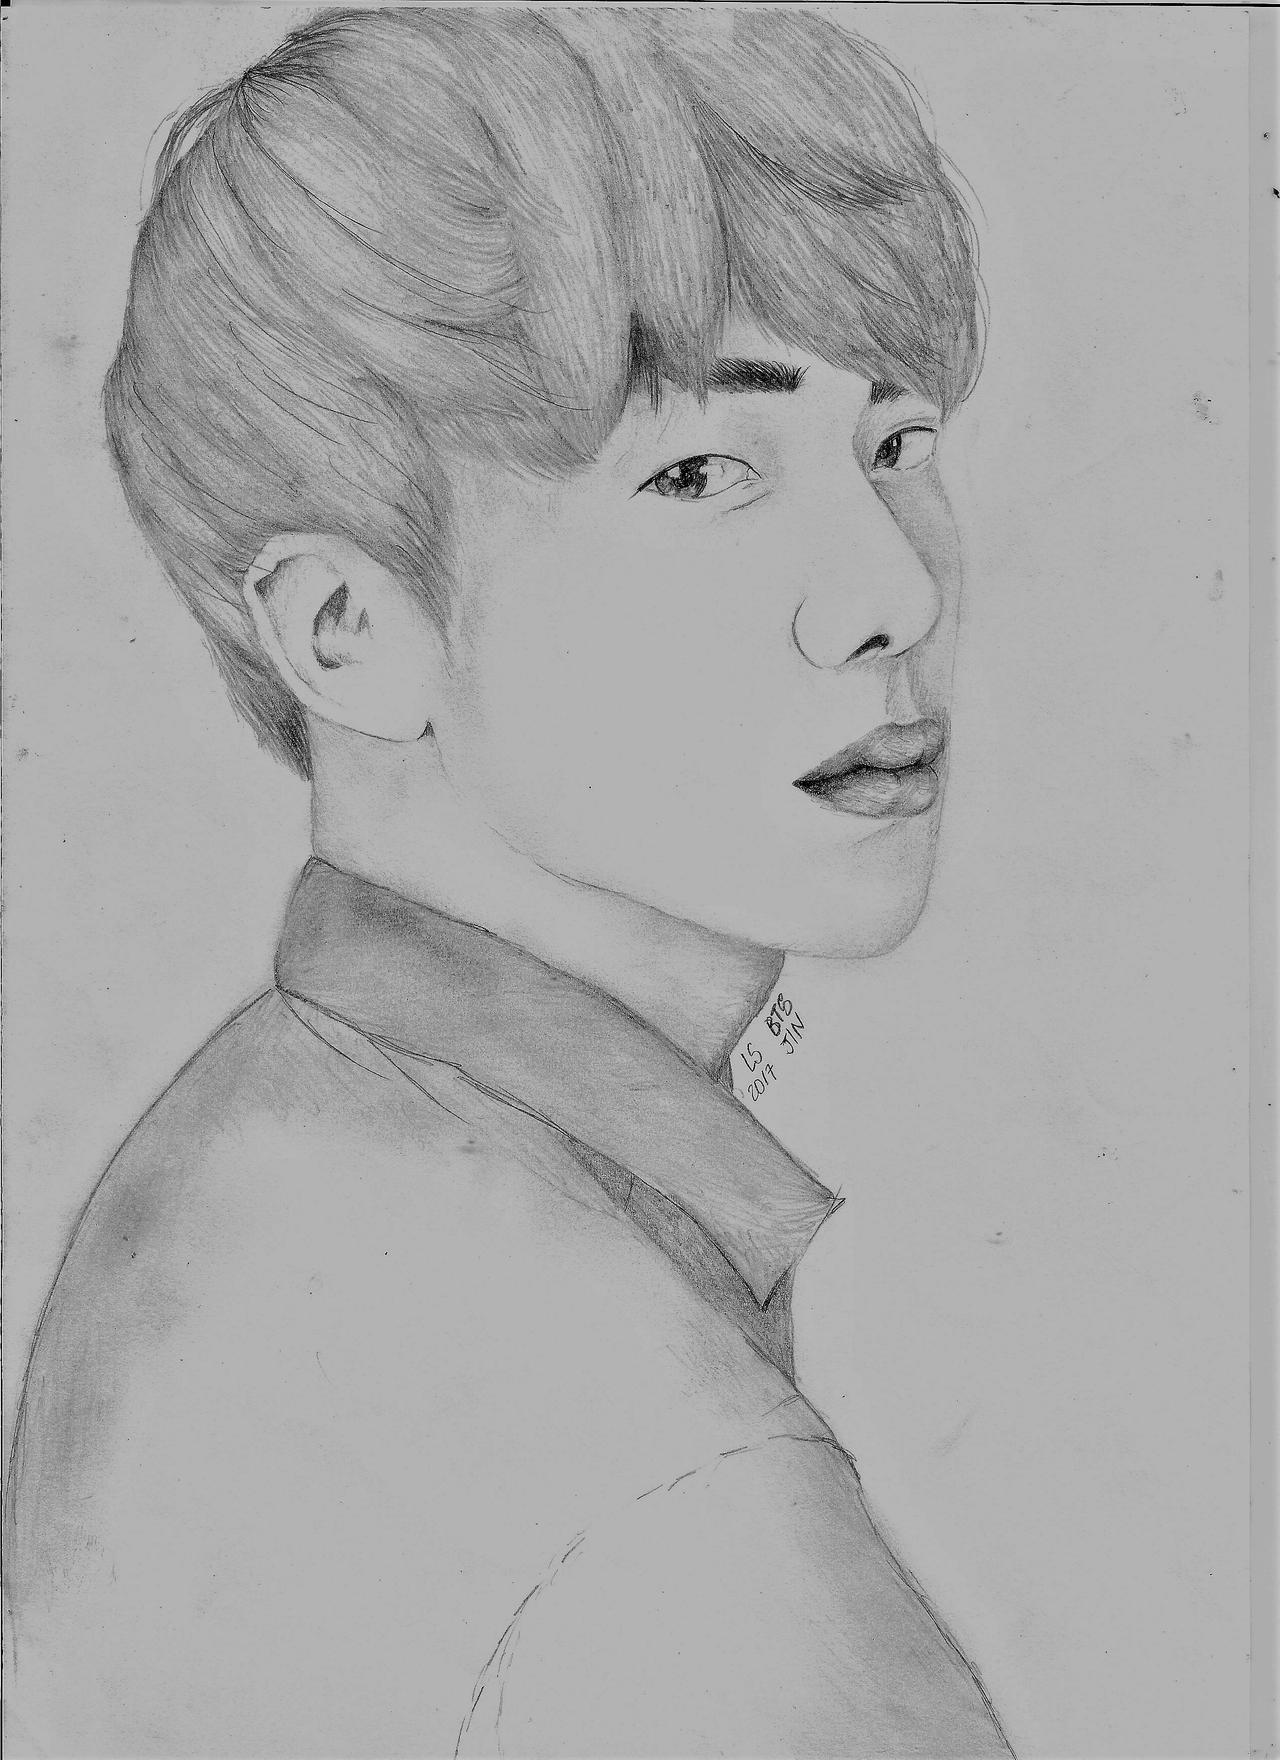 Jin Drawing Best